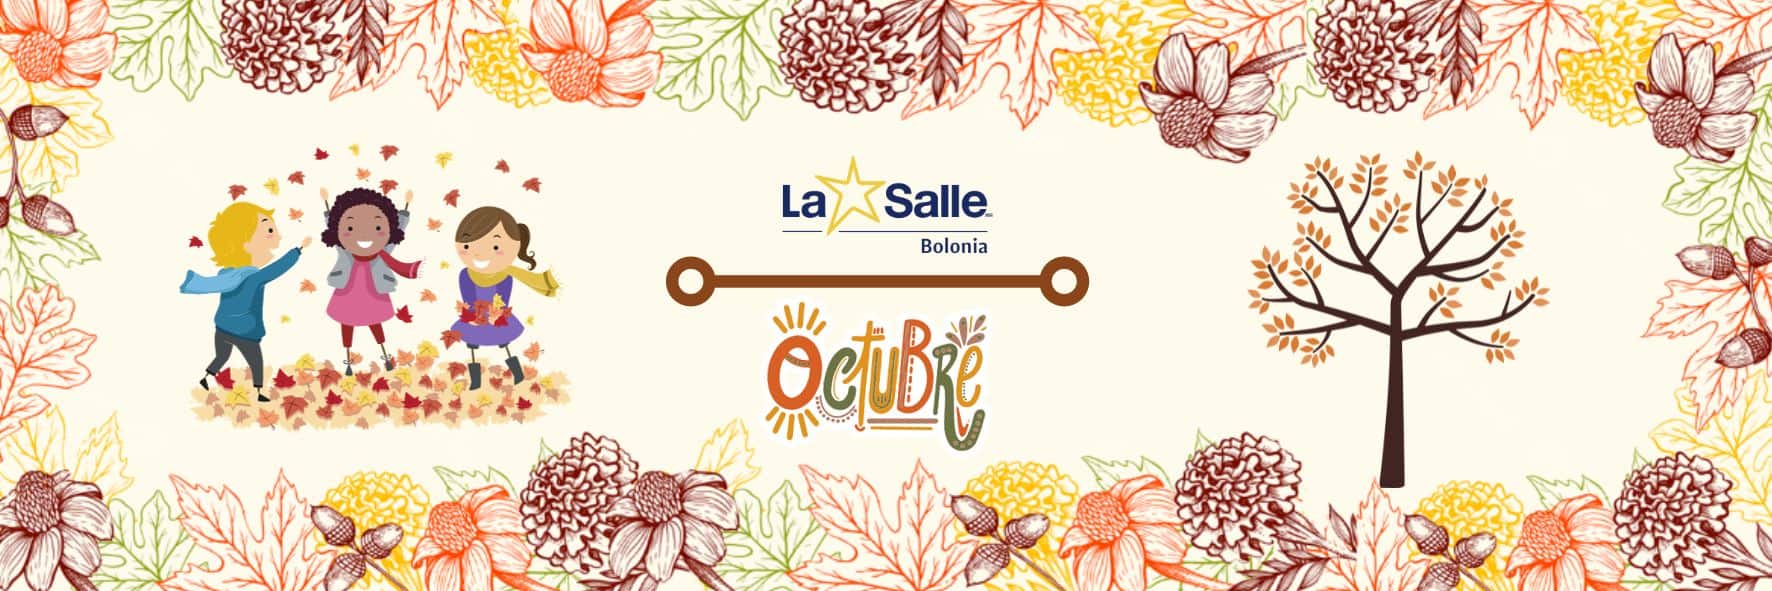 La Salle – Bolonia